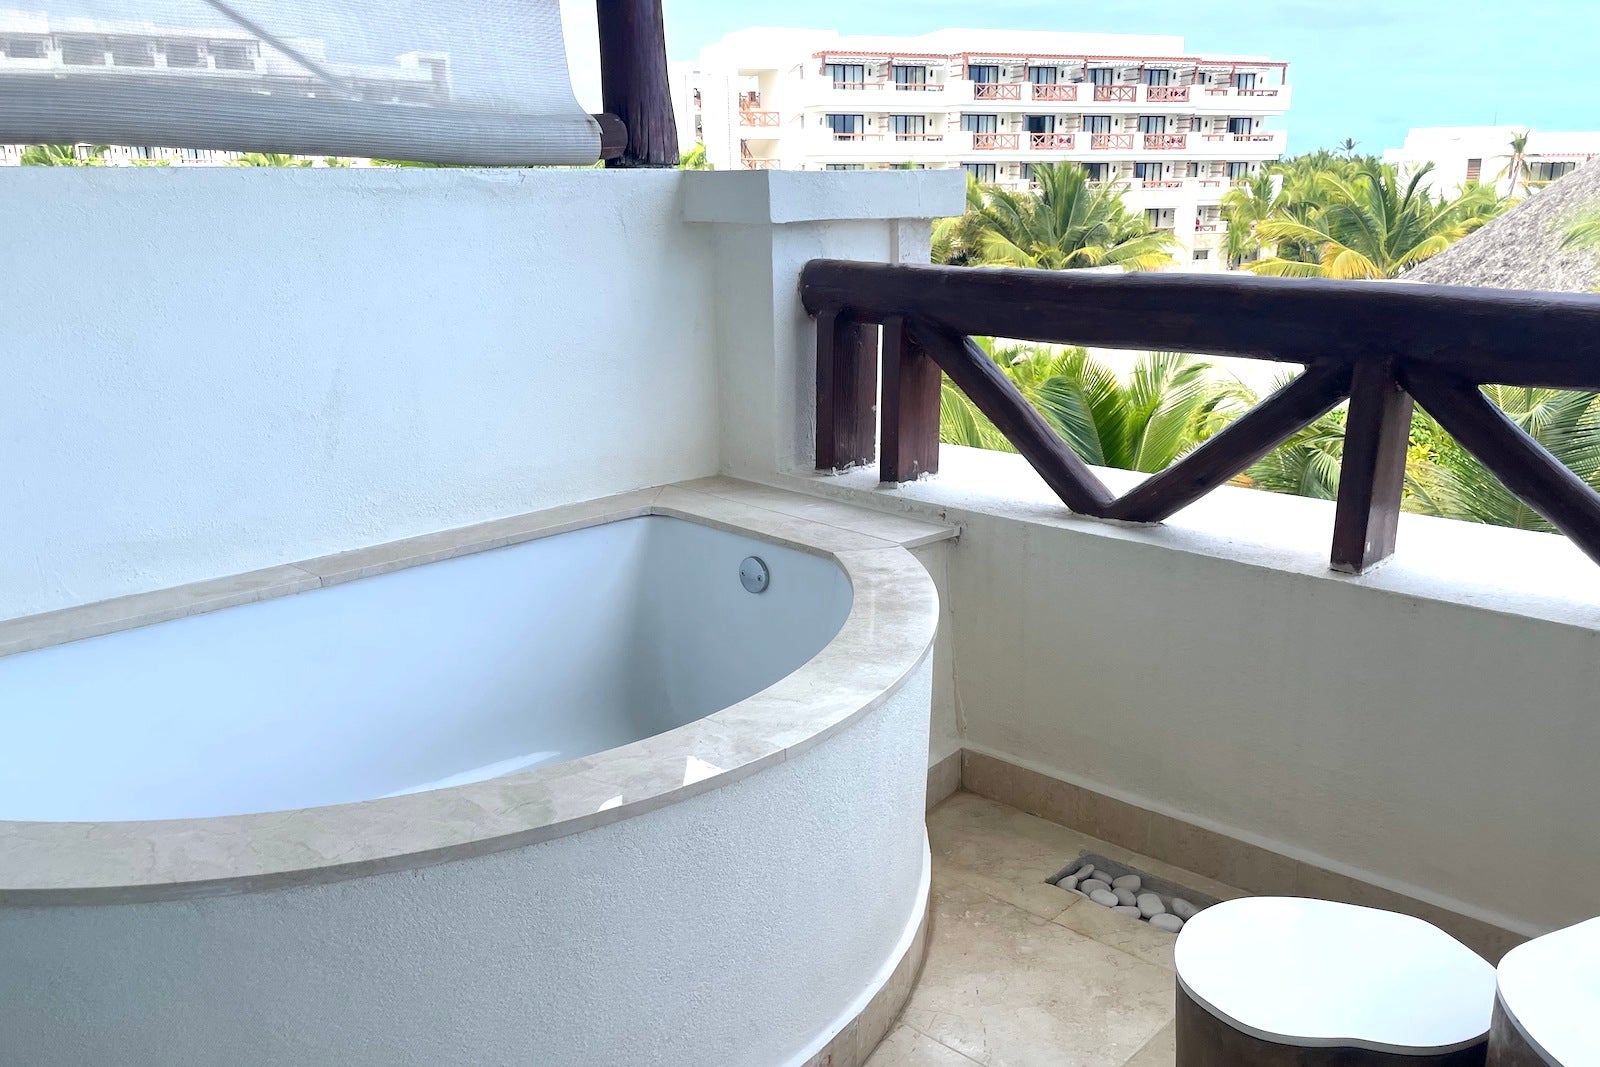 soaking tub on balcony